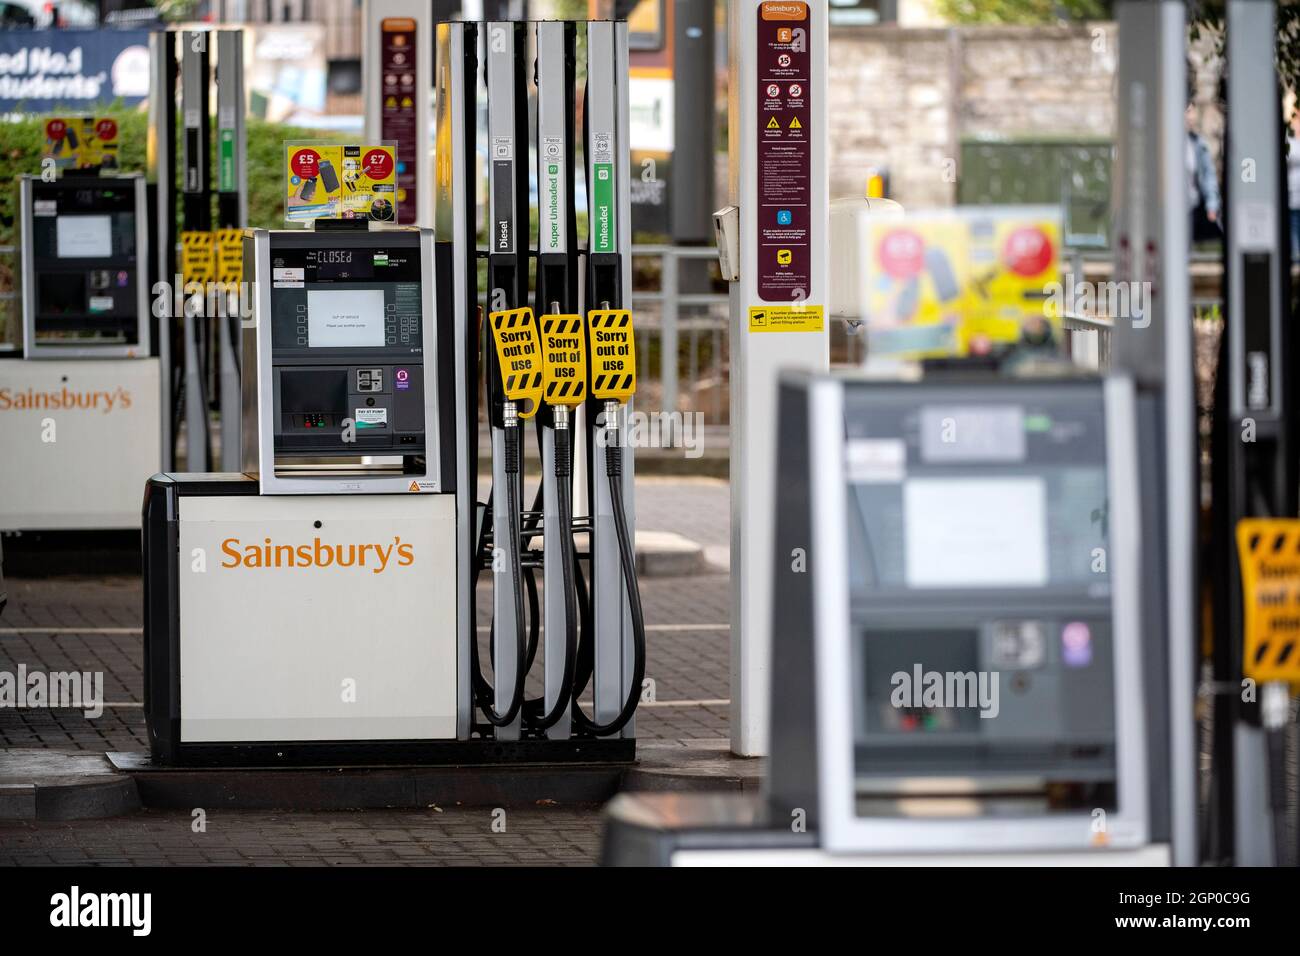 Una gasolinera de Sainsbury en Bath, Somerset, que se ha quedado sin combustible a medida que la crisis del combustible continúa en todo el Reino Unido. Foto de stock